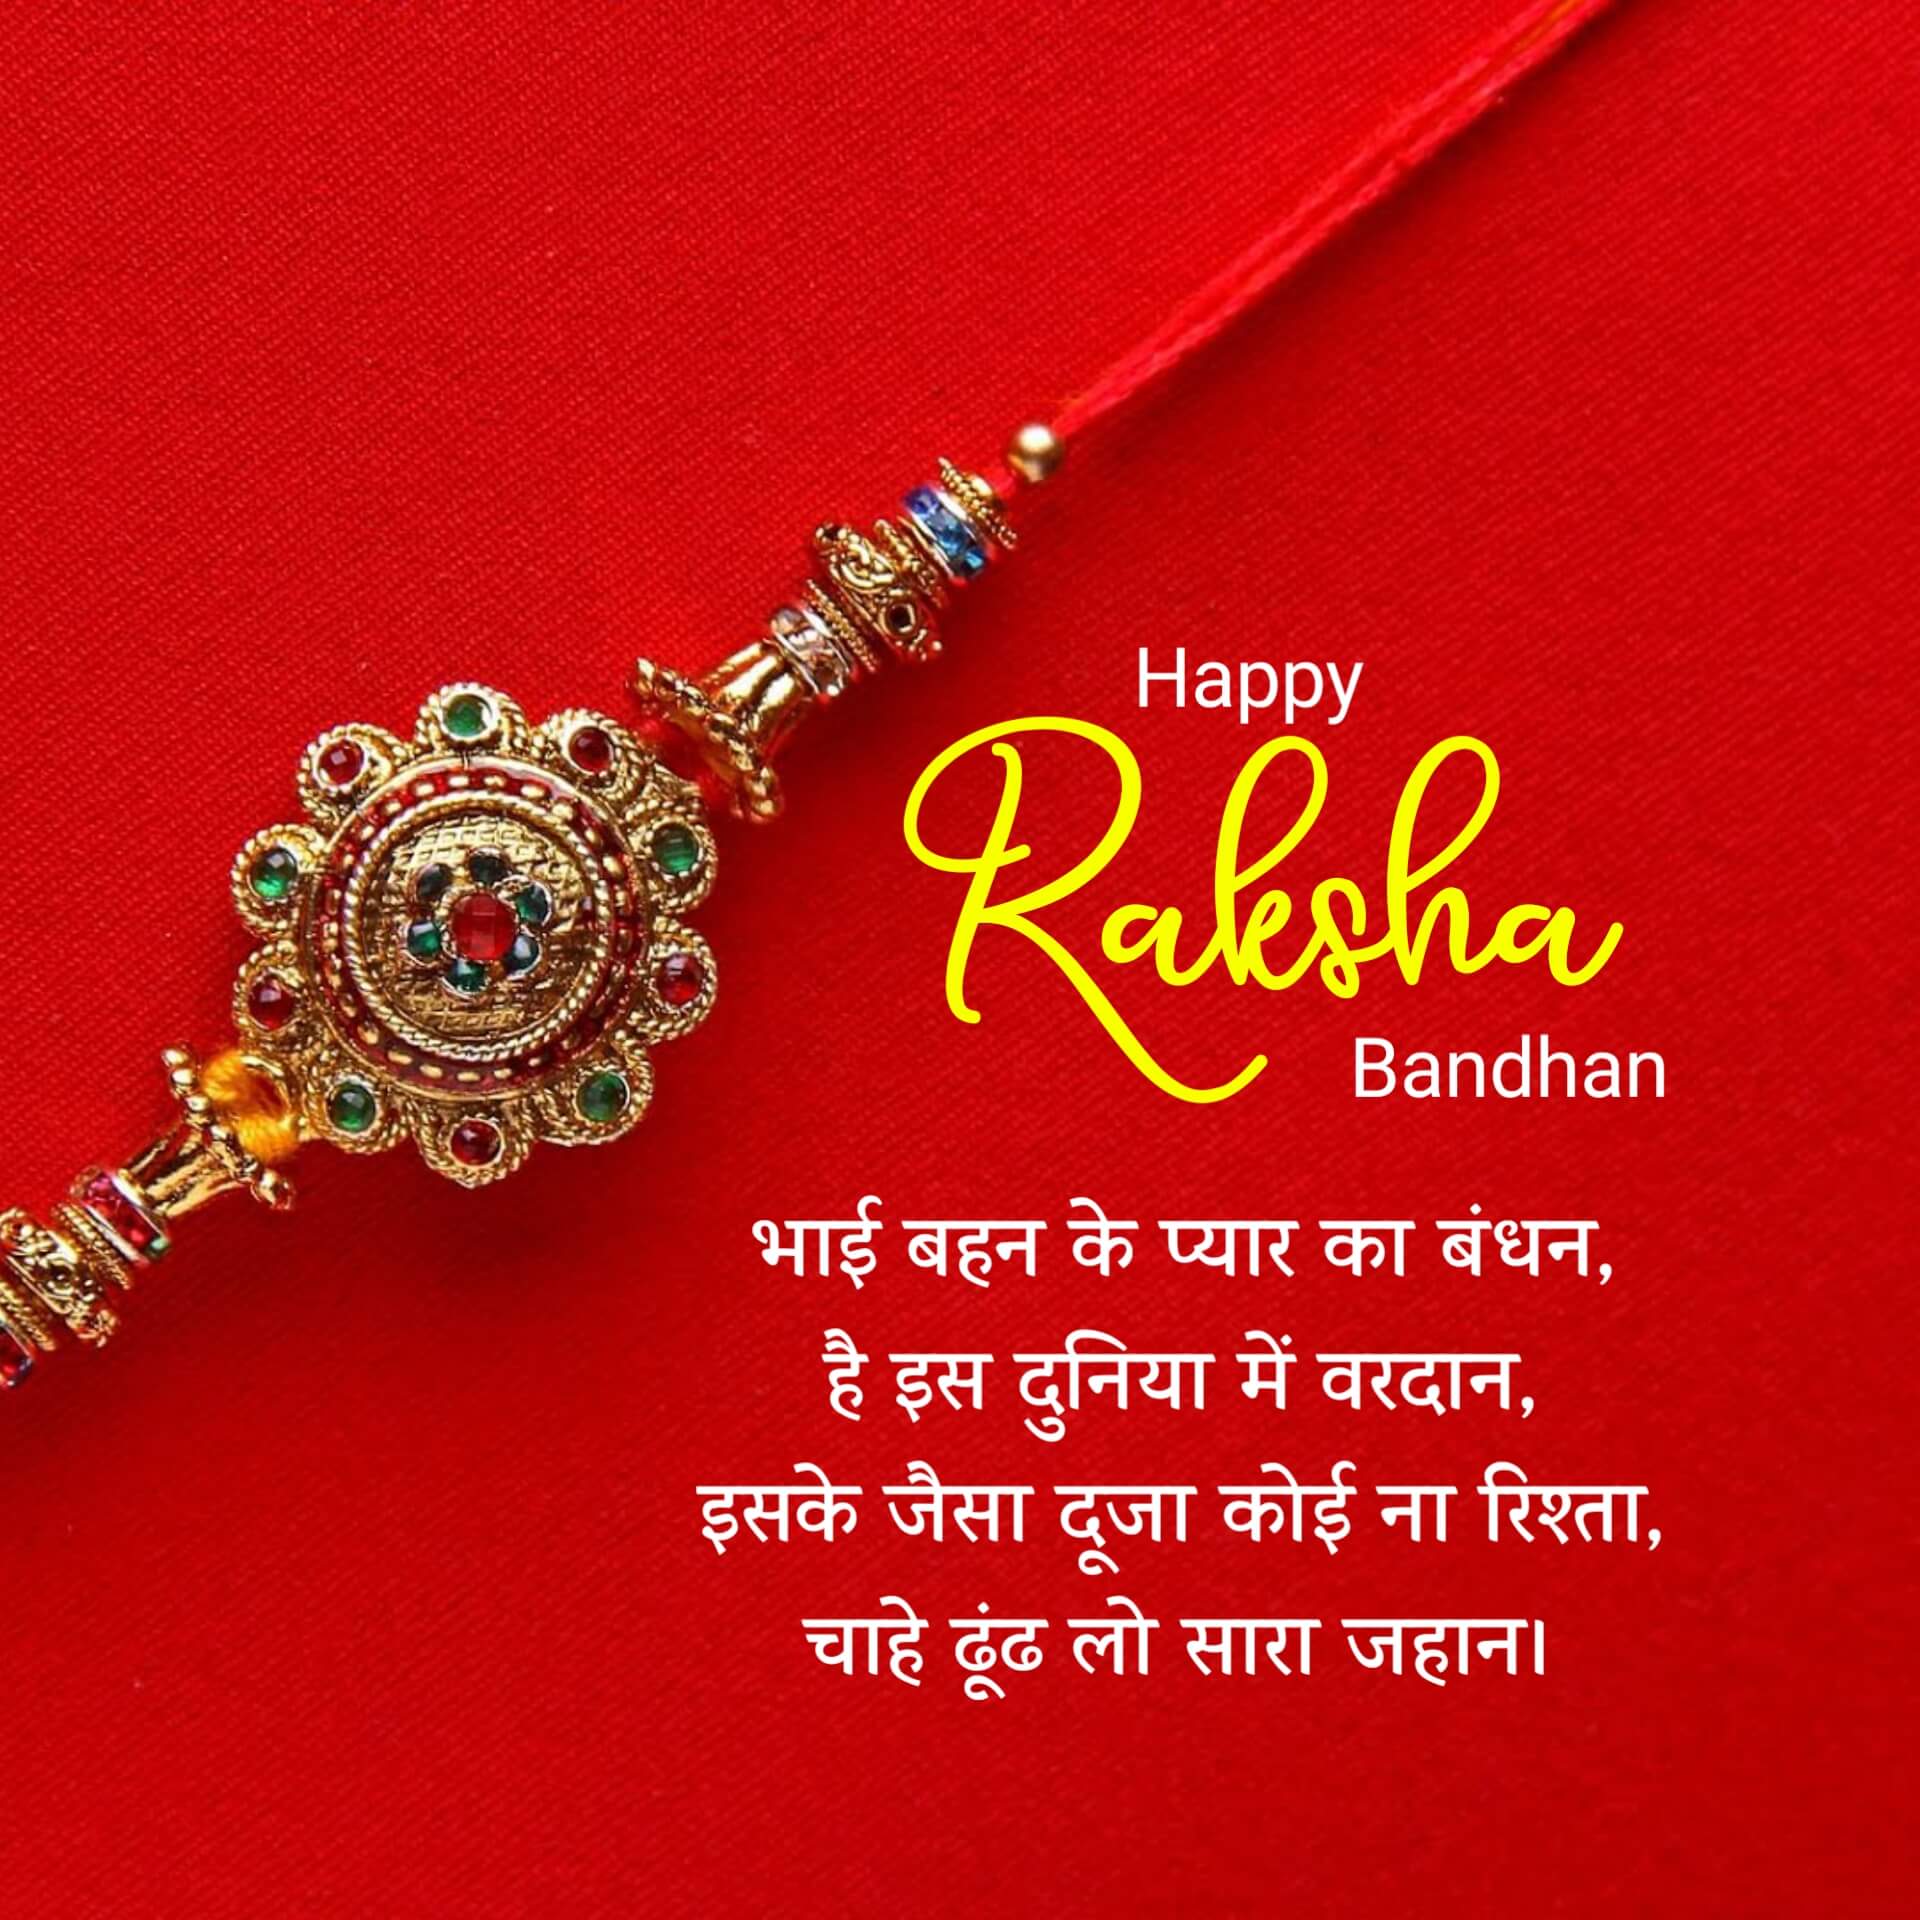 Raksha Bandhan Image in Hindi